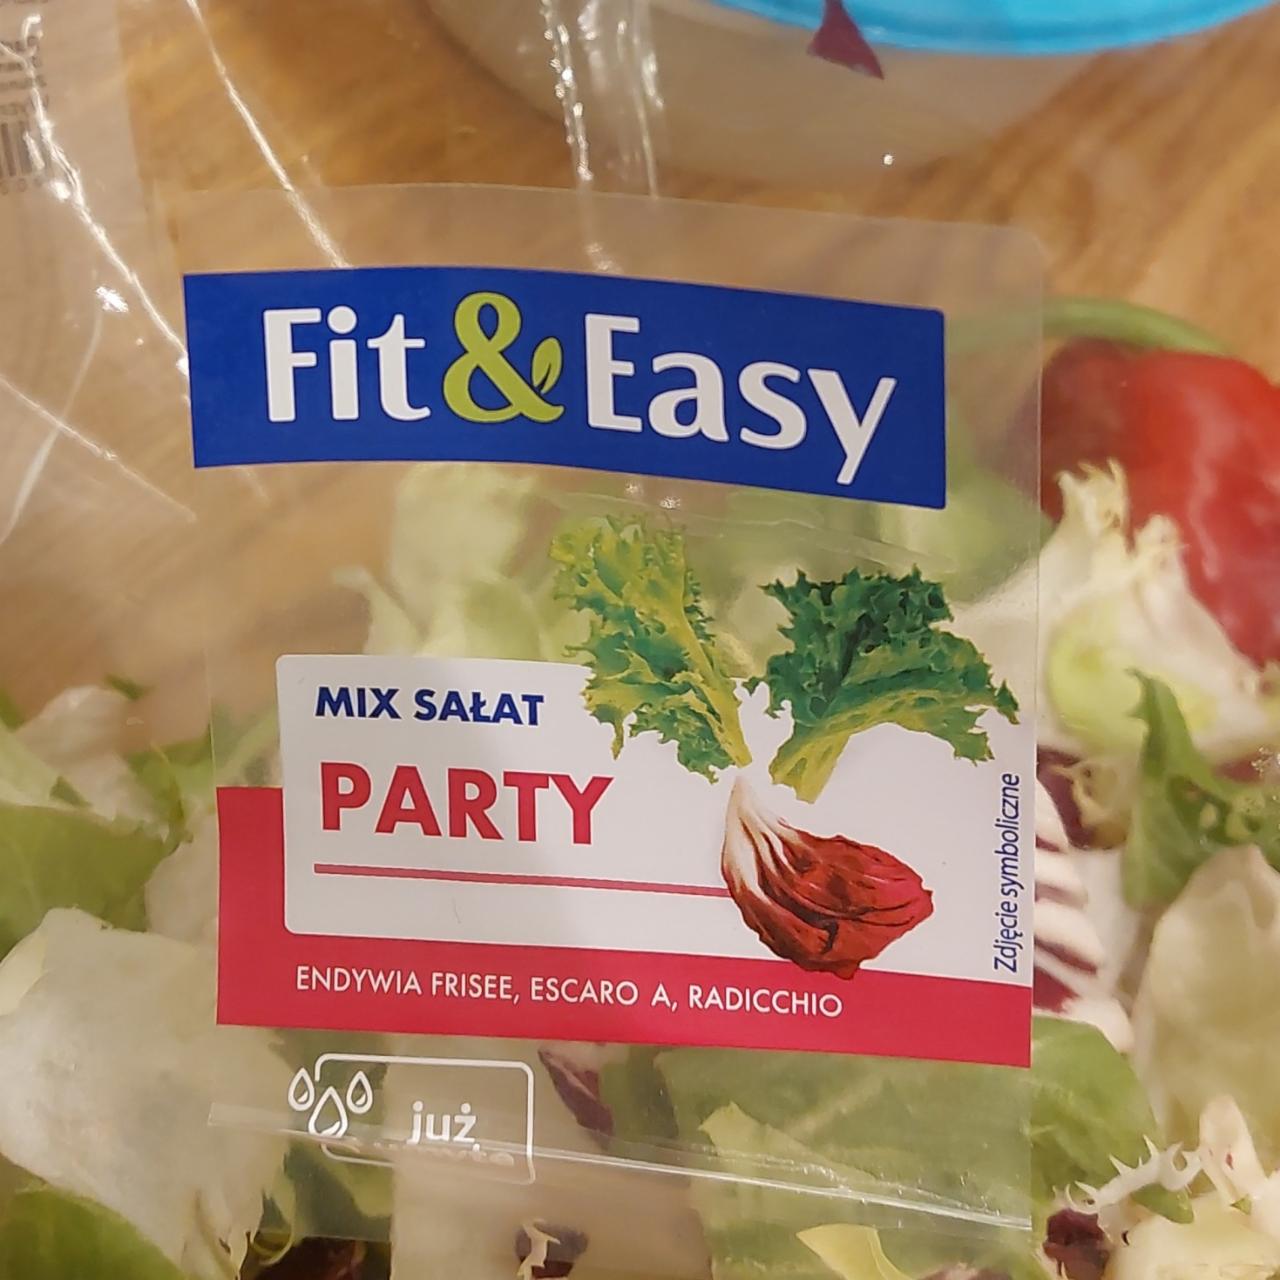 Zdjęcia - Mix sałat Party Fit&Easy